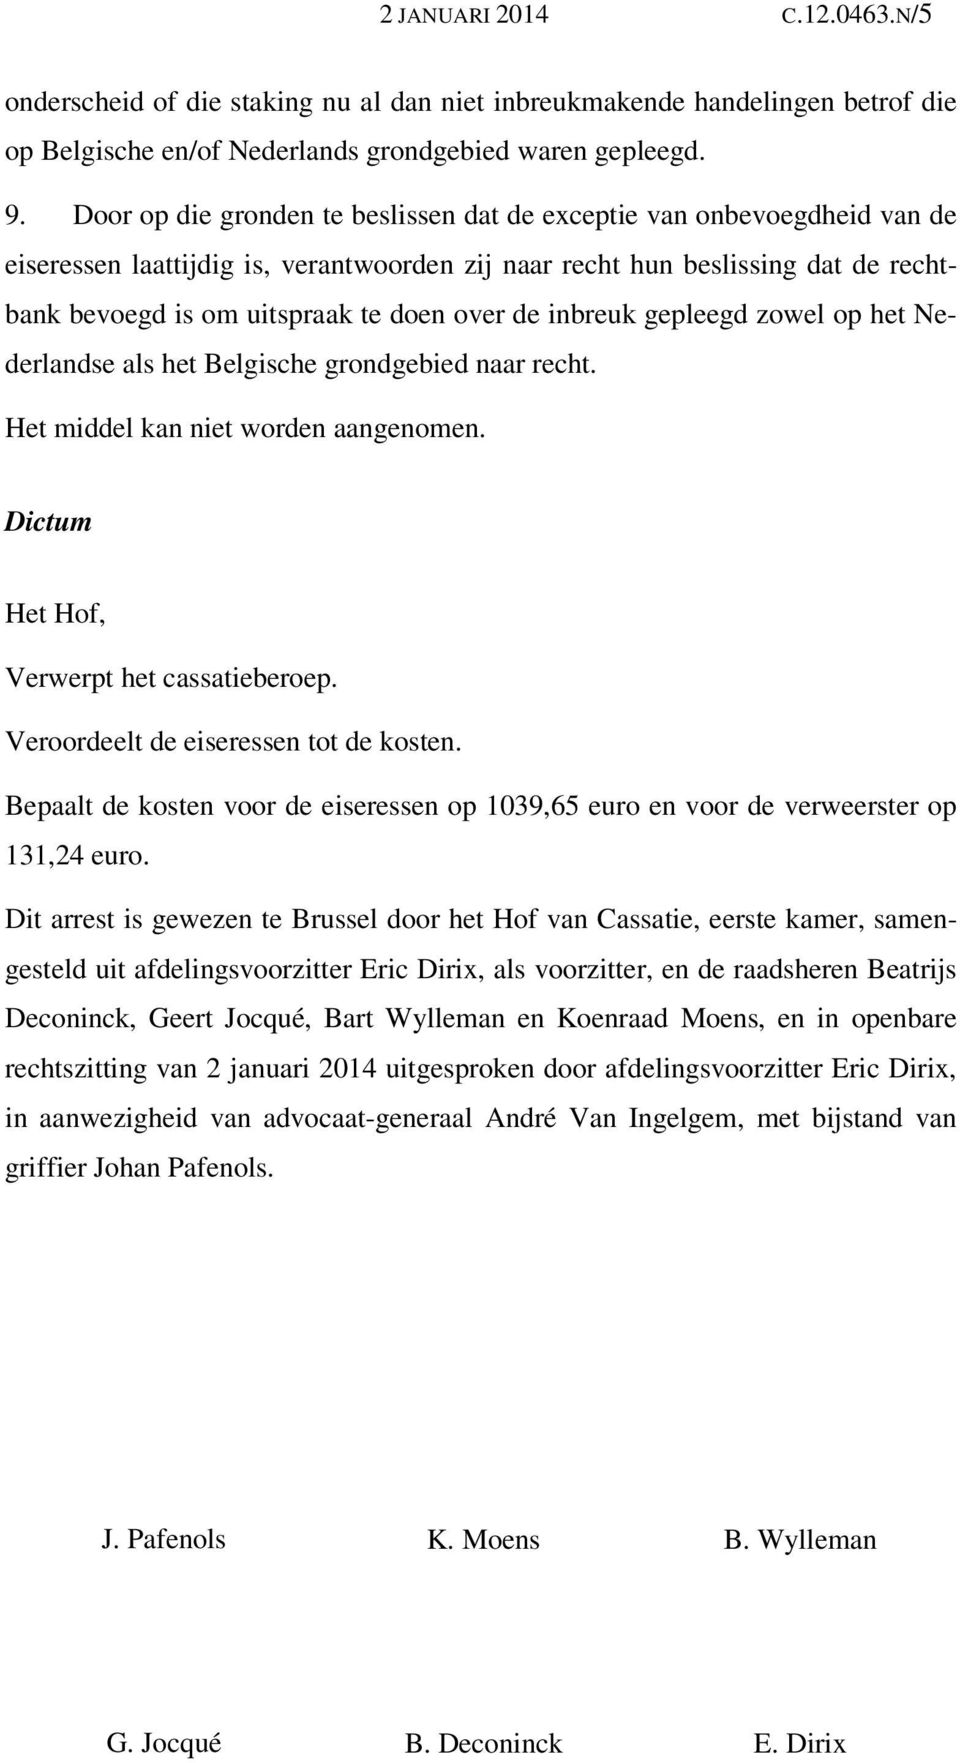 de inbreuk gepleegd zowel op het Nederlandse als het Belgische grondgebied naar recht. Het middel kan niet worden aangenomen. Dictum Het Hof, Verwerpt het cassatieberoep.